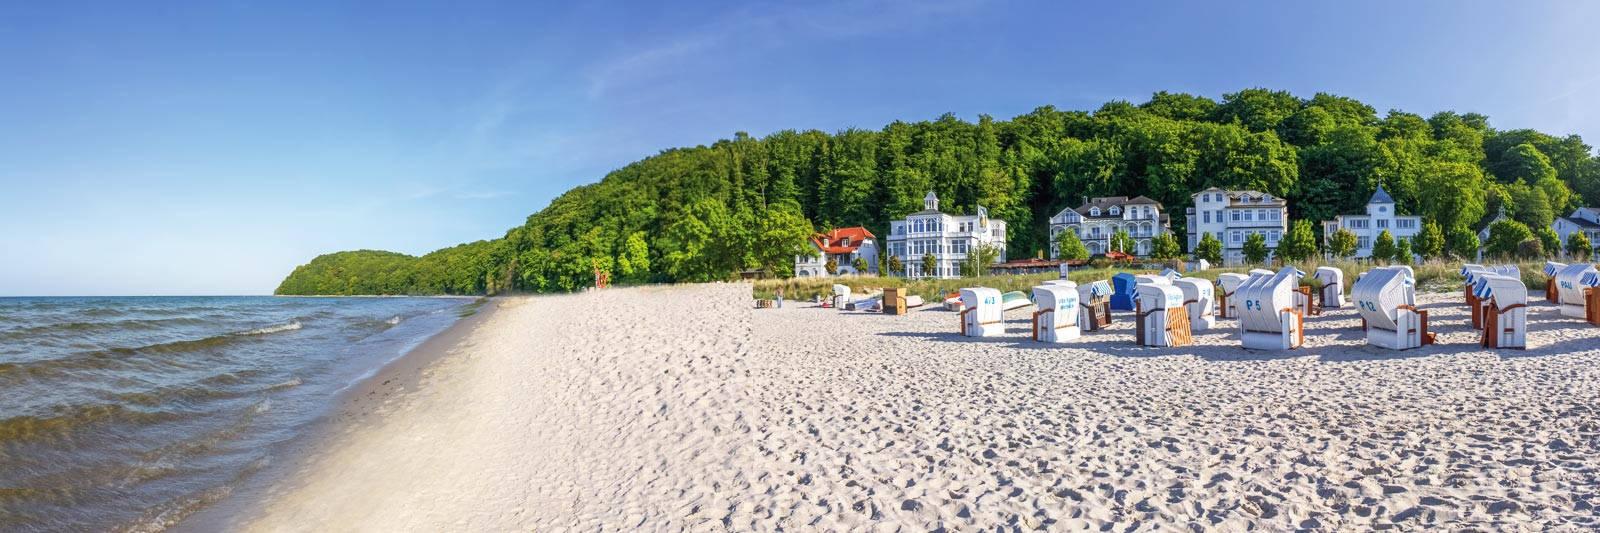 140 Ferienwohnungen und Ferienhäuser in Hoppenrade - tourist-online.de